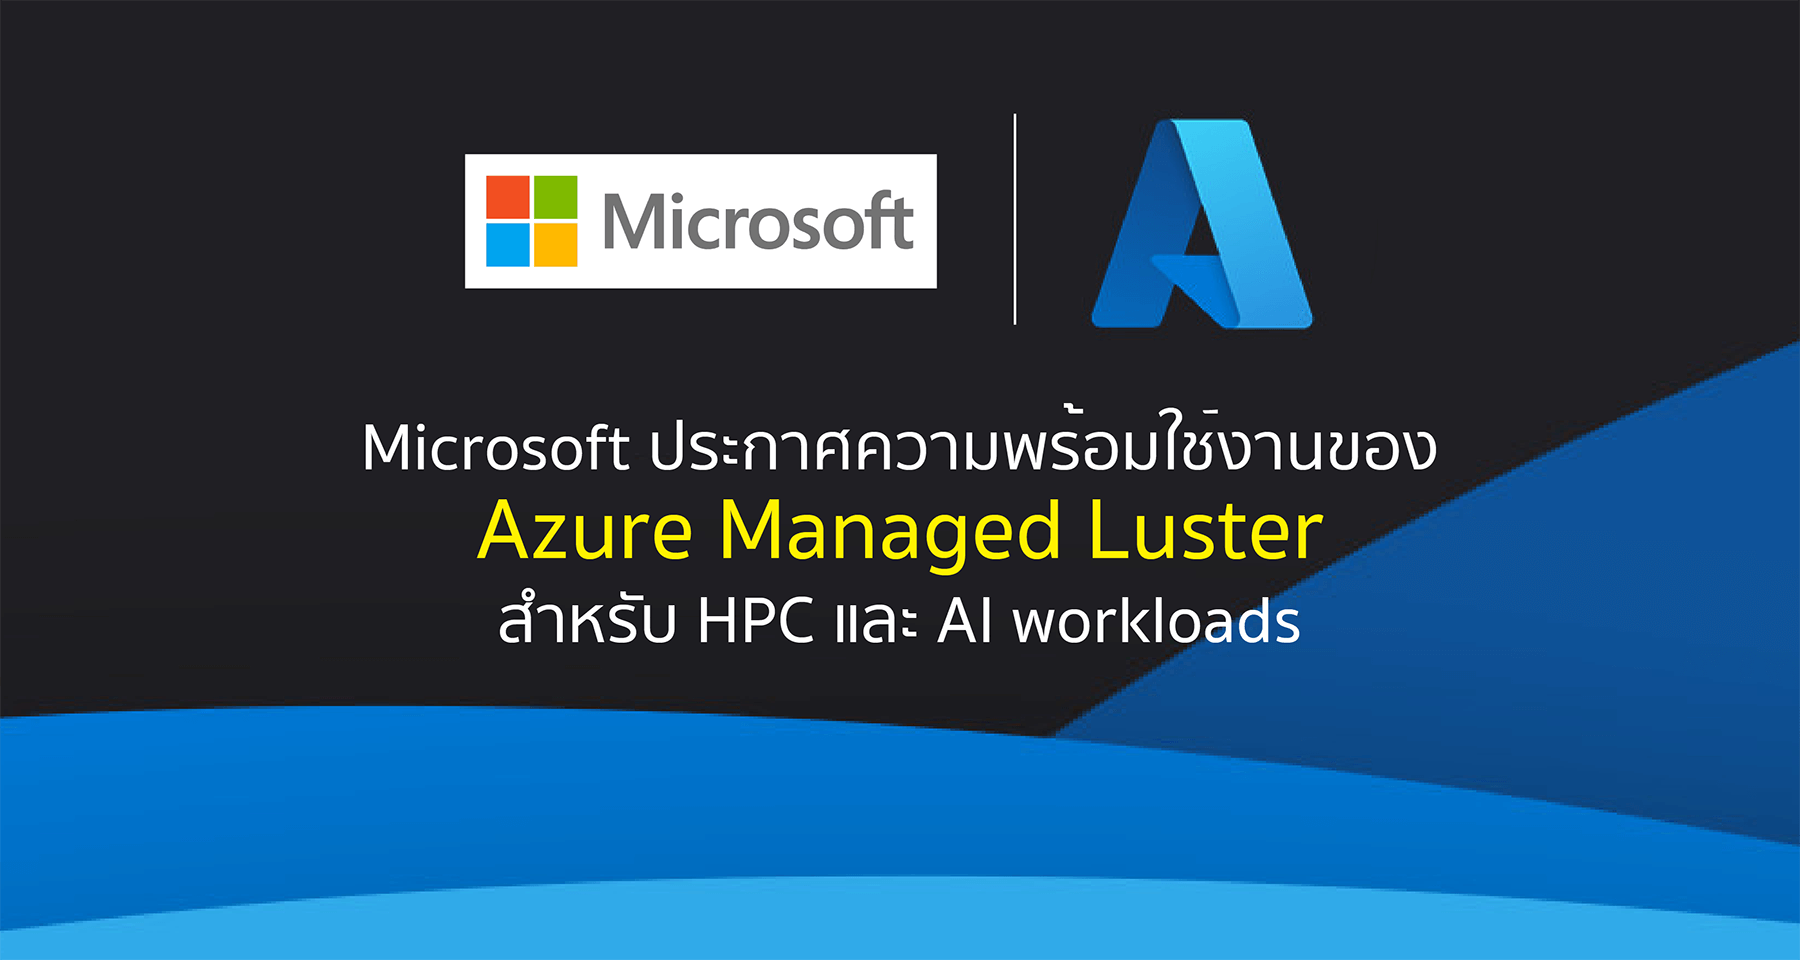 Microsoft ประกาศความพร้อมใช้งานของ Azure Managed Luster สำหรับ HPC และ AI workloads